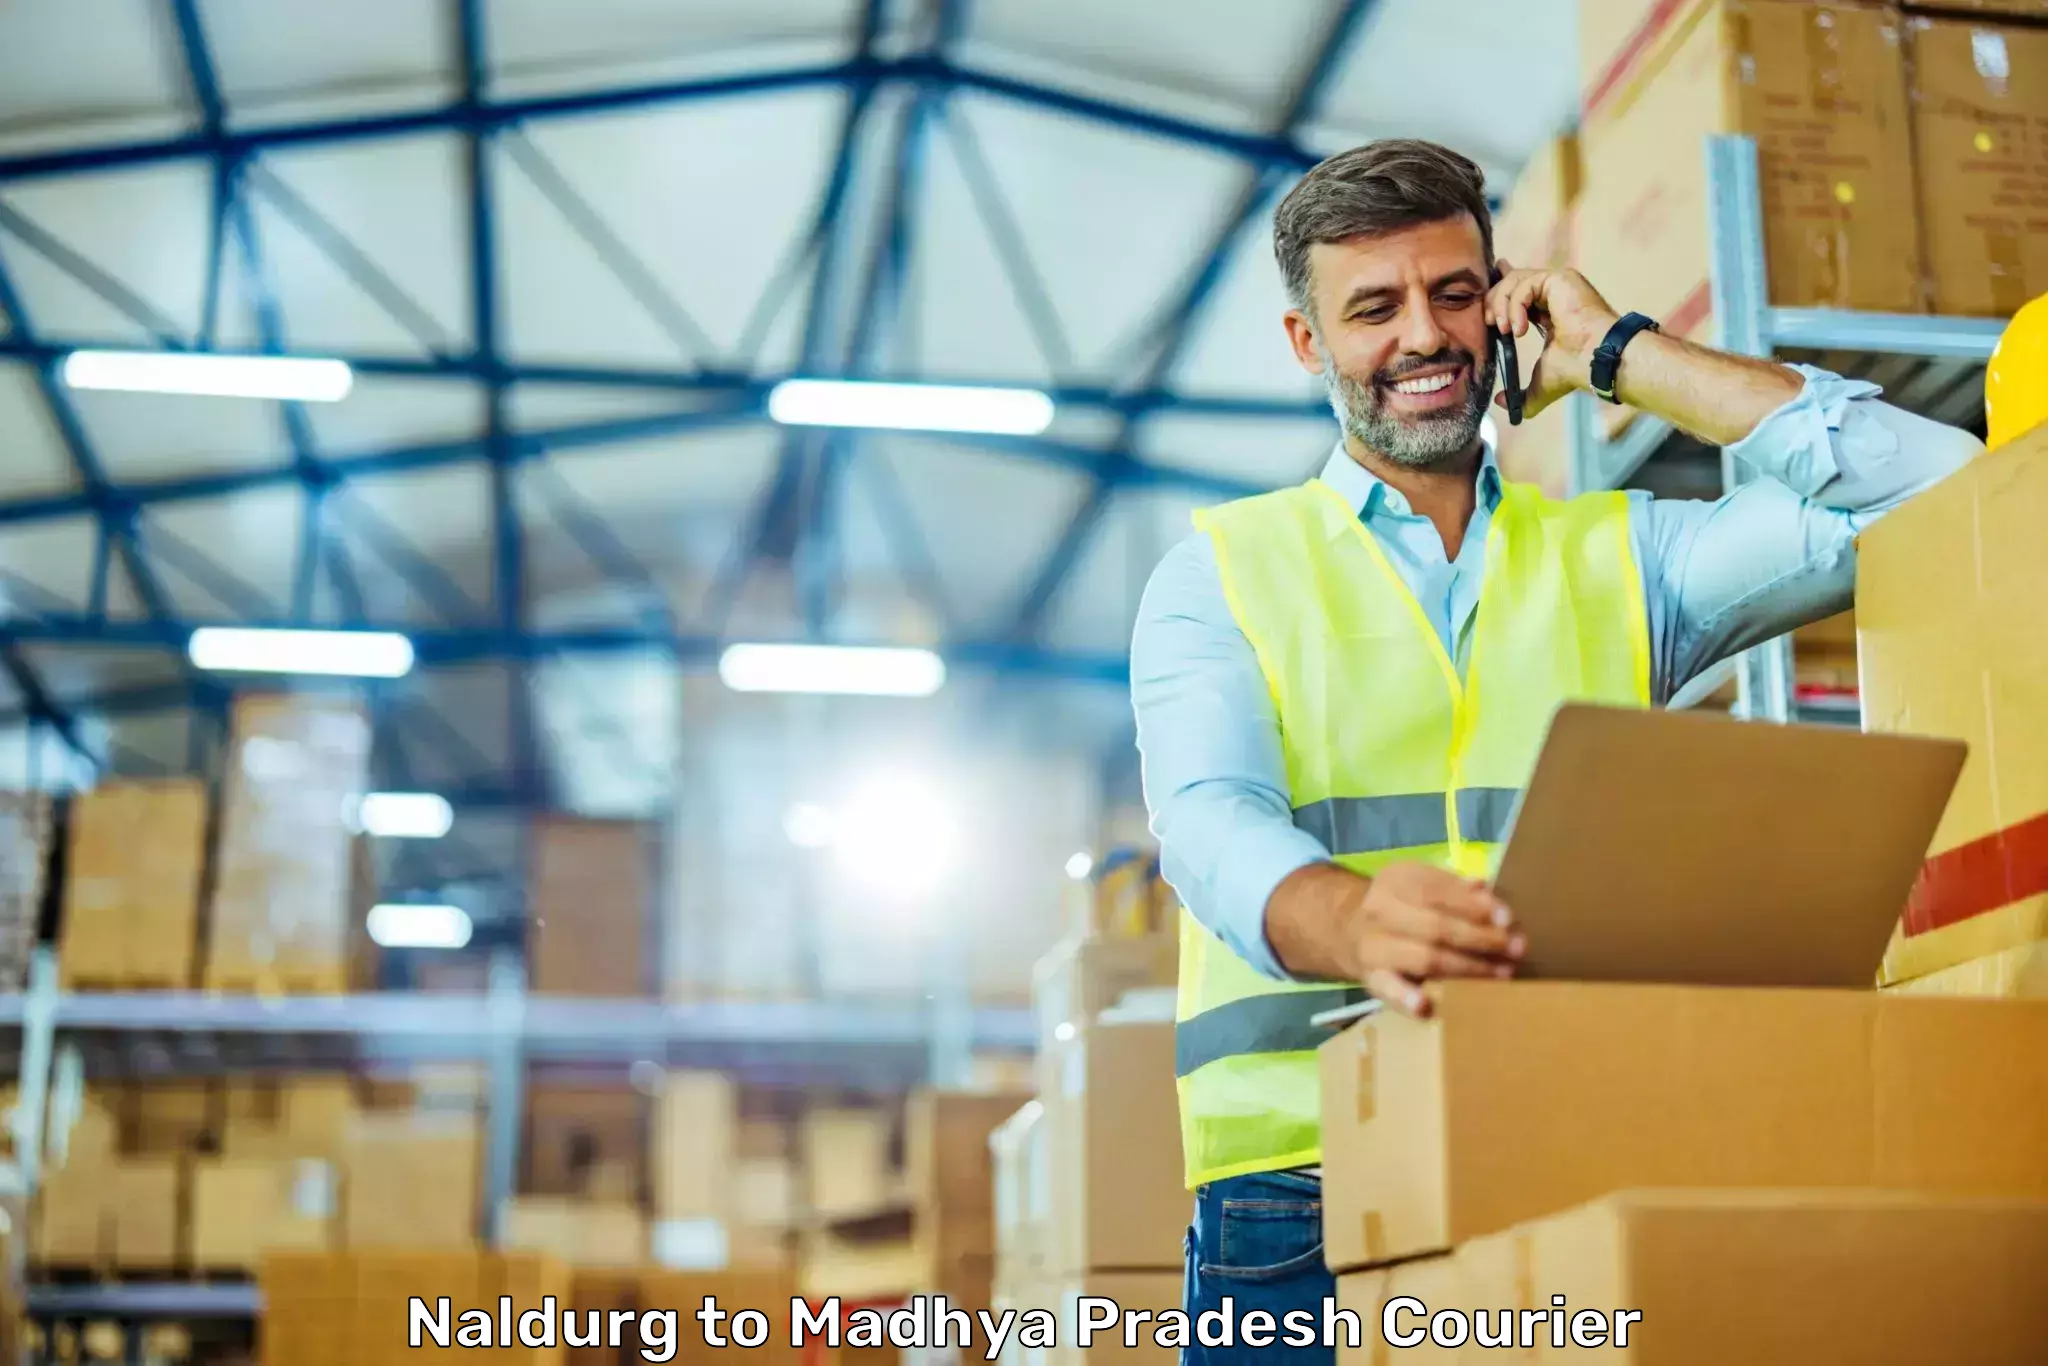 Full-service courier options Naldurg to Madhya Pradesh